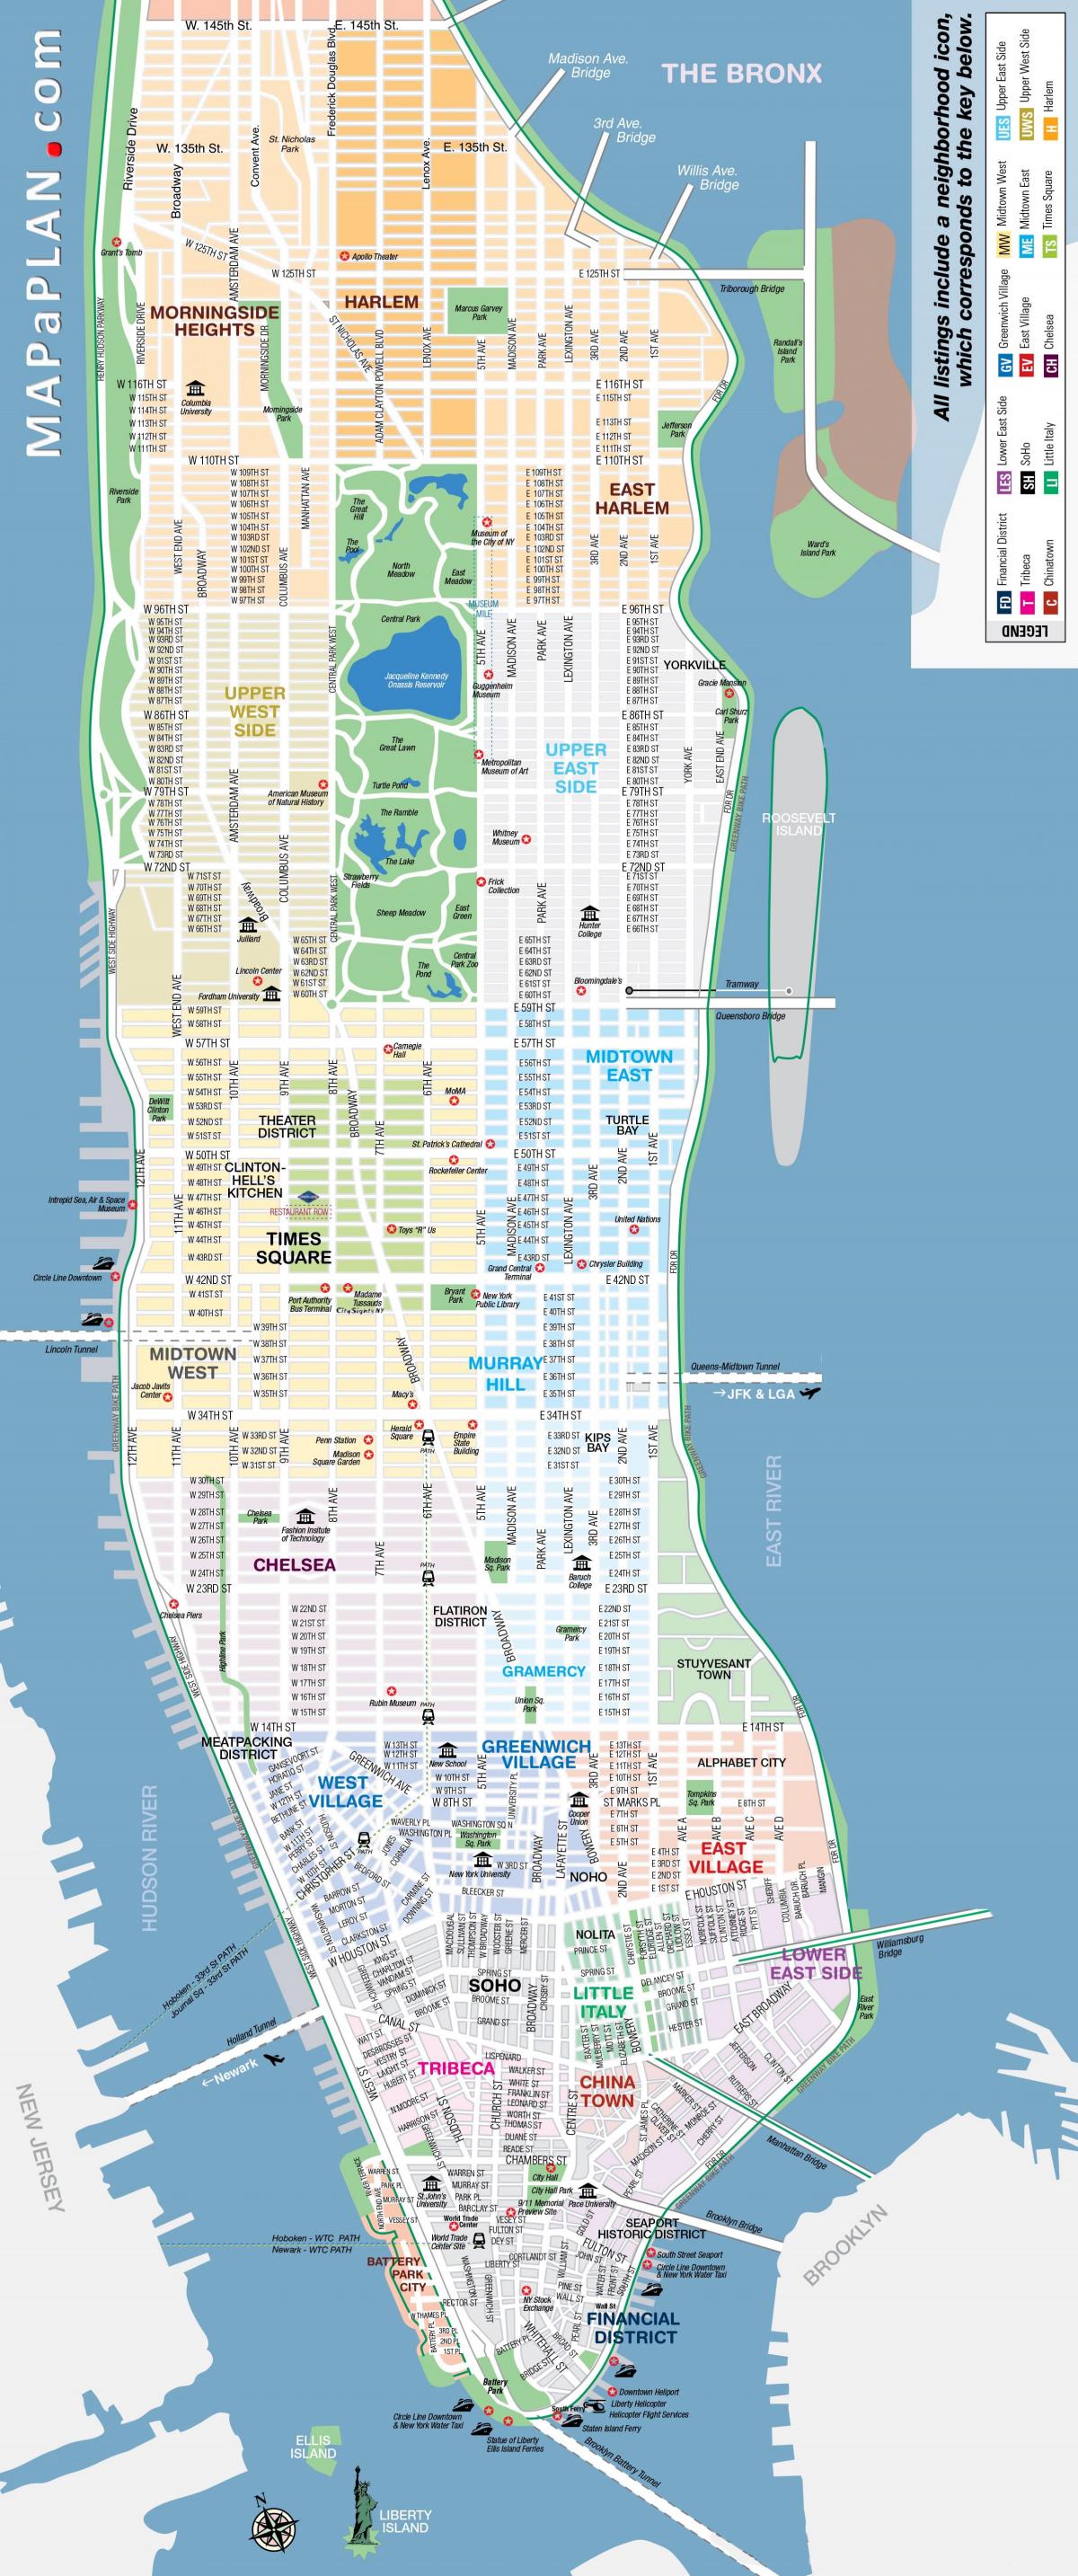 tasuta printable kaart NYC-Manhattan